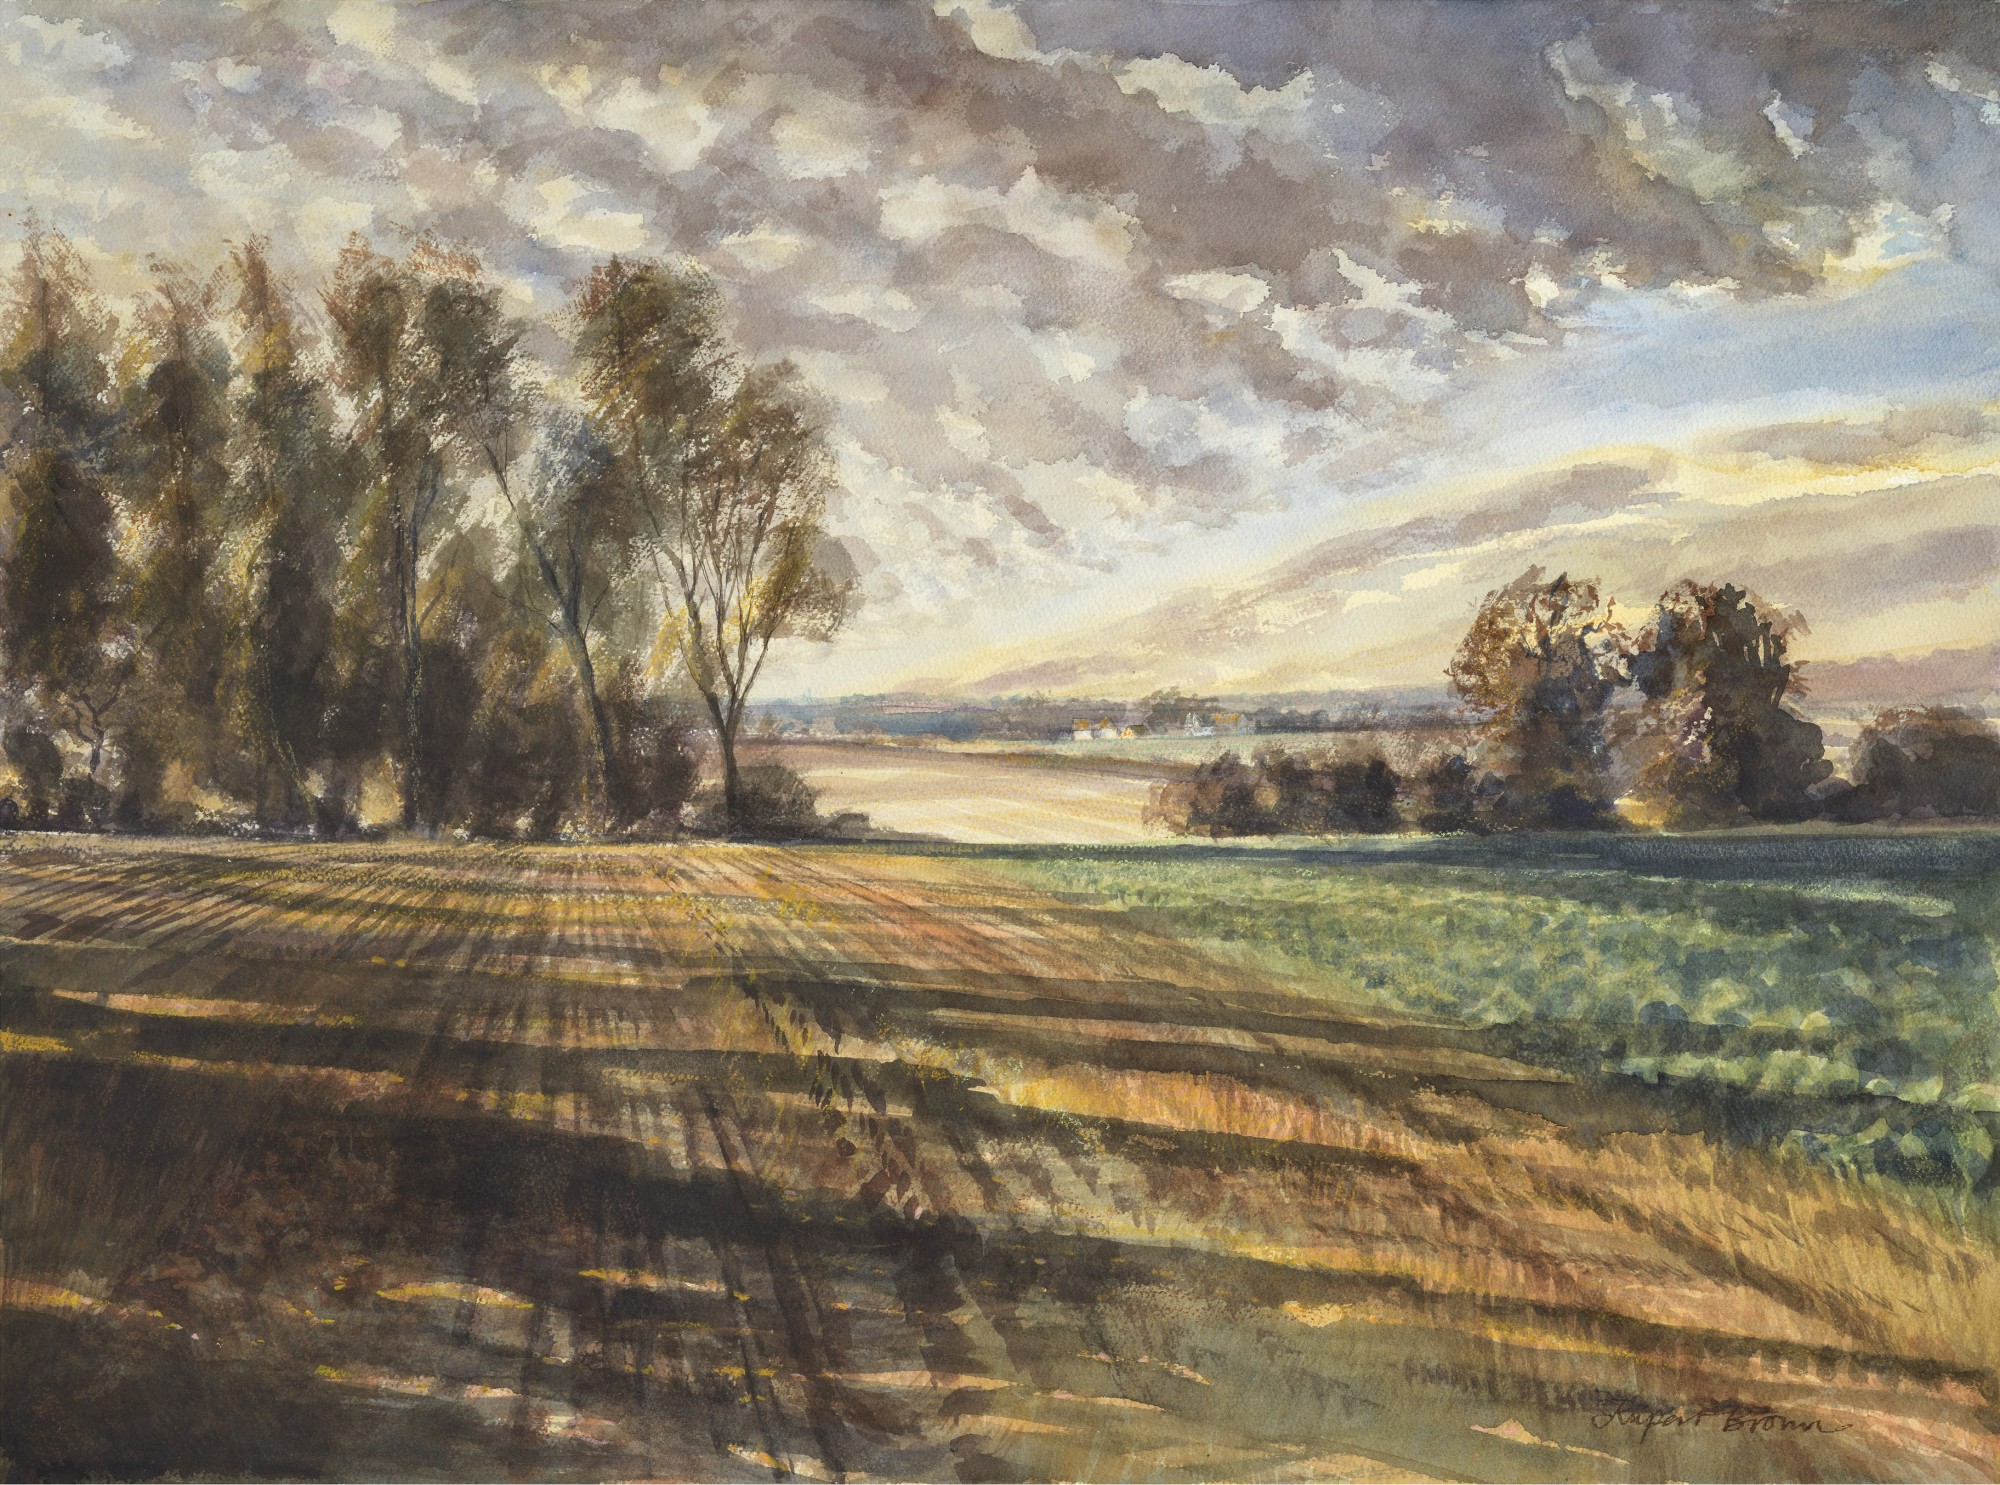 Suffolk fields, Rupert Brown